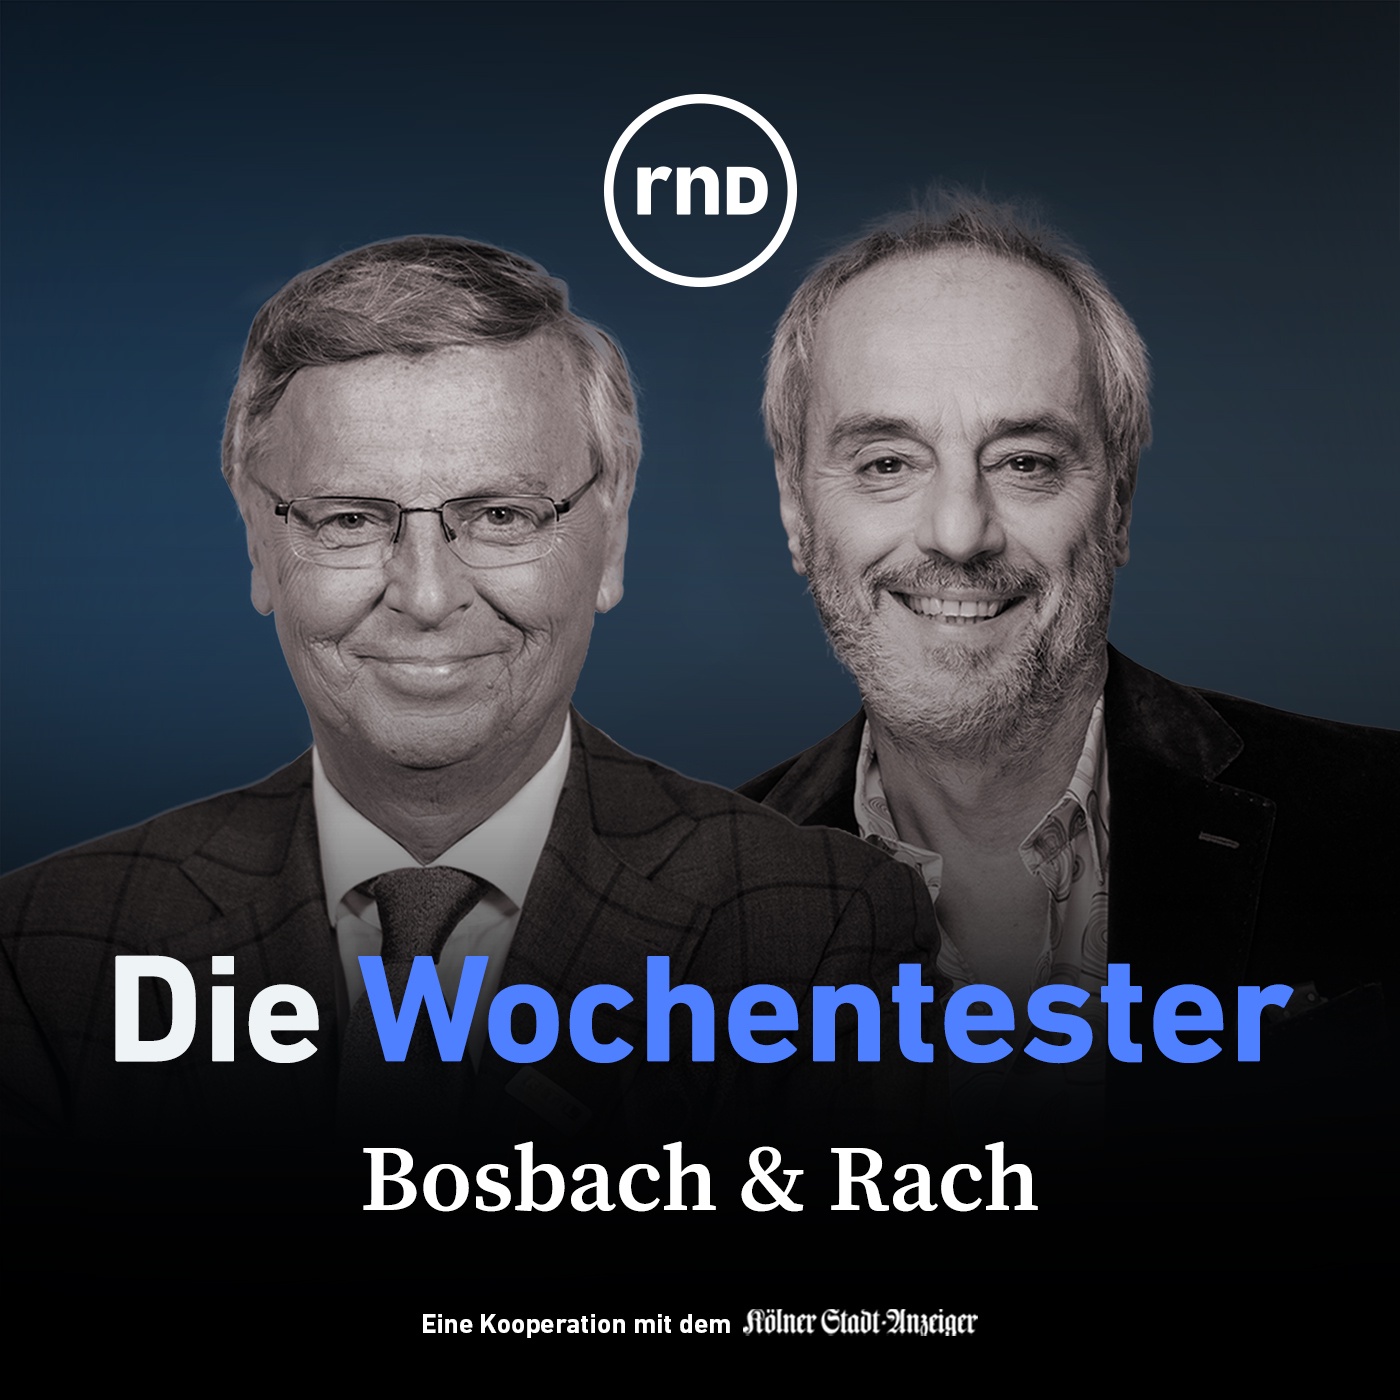 Bosbach & Rach - mit Hannes Jaenicke, Anna Schneider, Carsten Fiedler und Becker & Stübinger